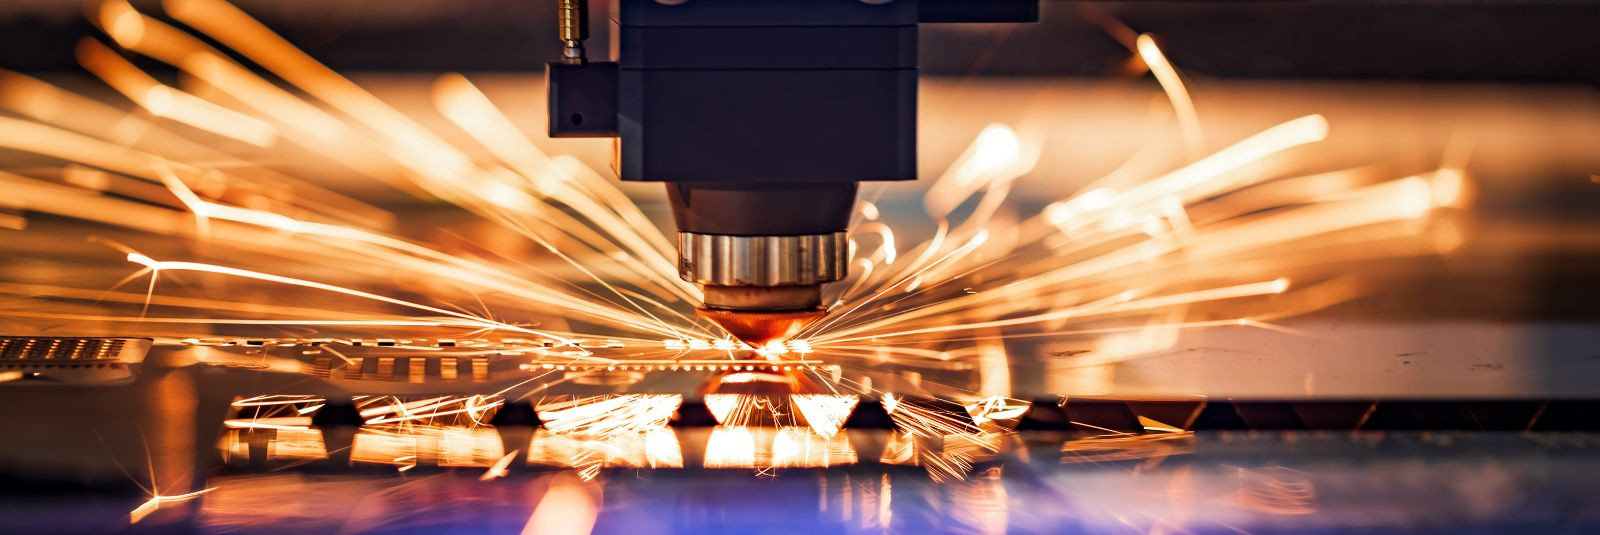 Metallitöötlemisel on plasma- ja laserlõikus kaks tipptehnoloogilist meetodit, mis võimaldavad saavutada täpsust, kiirust ja efektiivsust. Need meetodid on muut